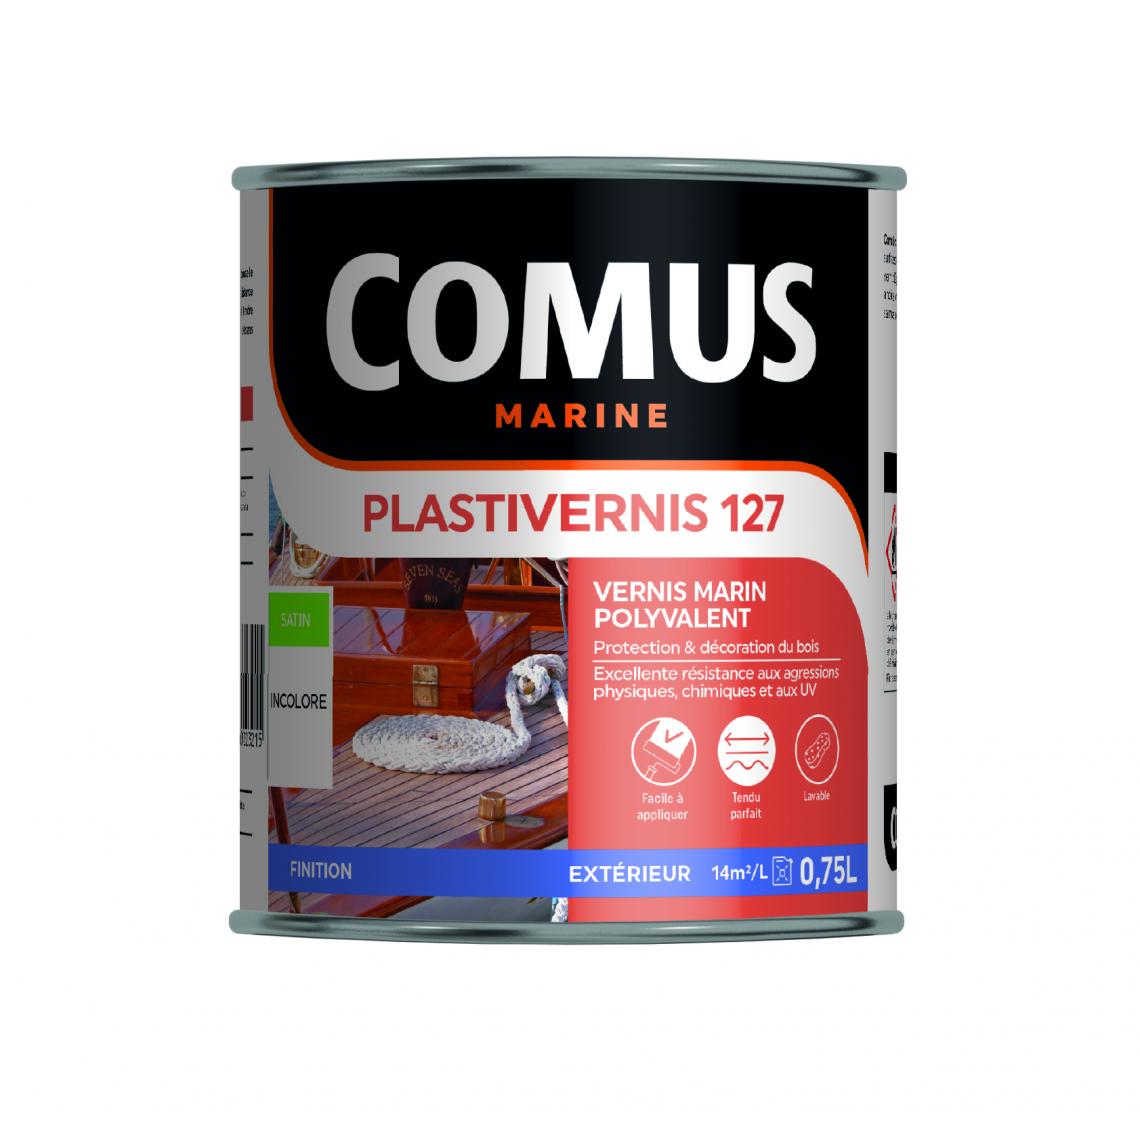 Comus - PLASTIVERNIS 127 BRILLANT 0,75 L - Vernis marin monocomposant alkyde-uréthane - COMUS MARINE - Matériel de pose, produits d'entretien